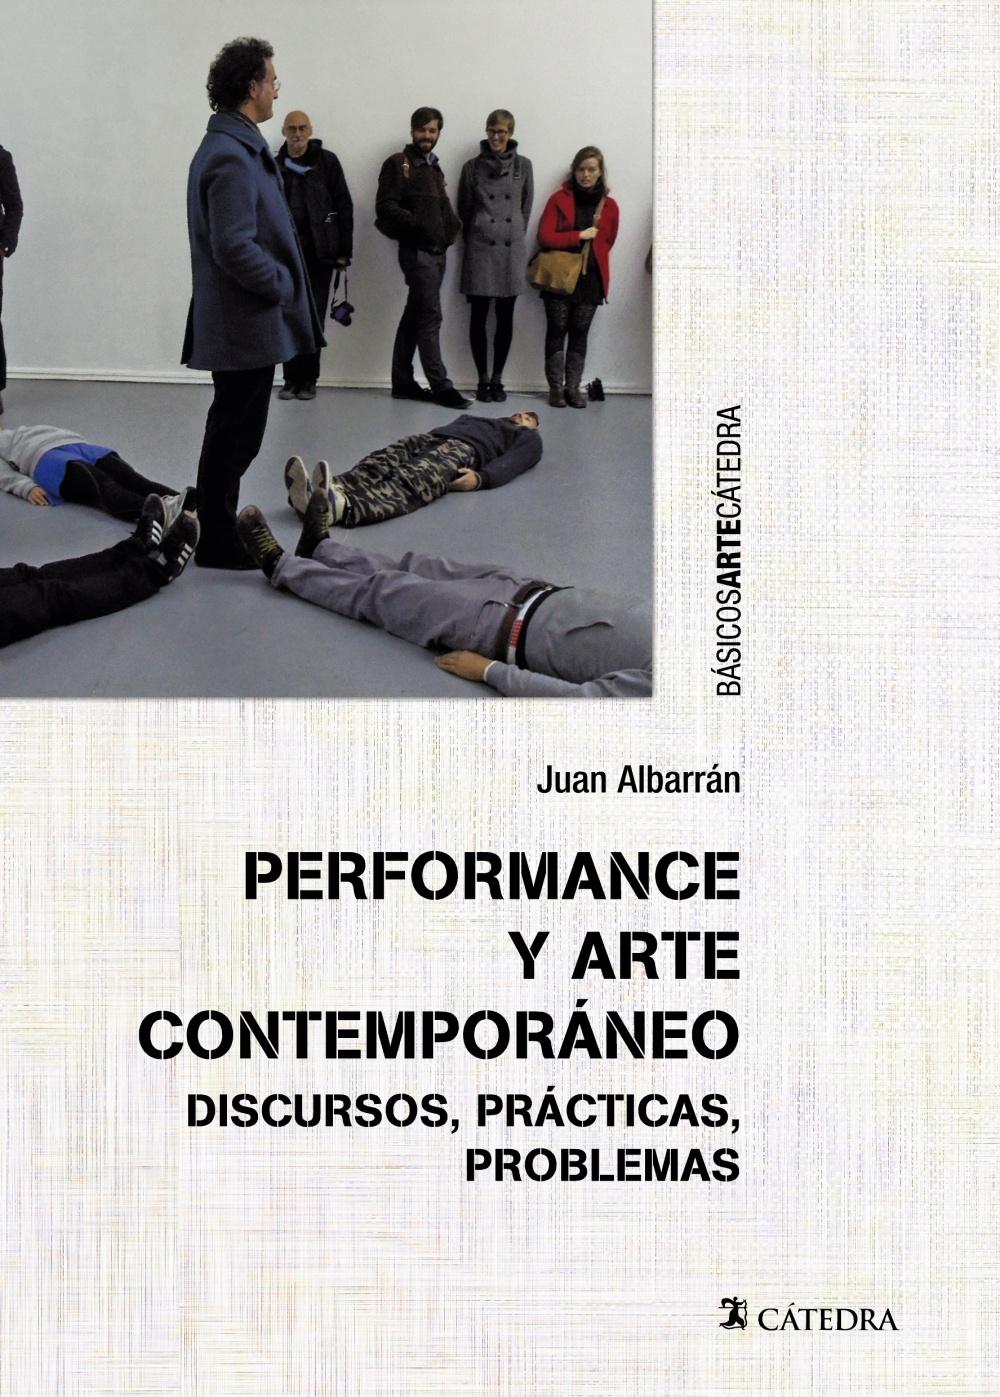 Performance y arte contemporáneo "Discursos, prácticas y problemas". 